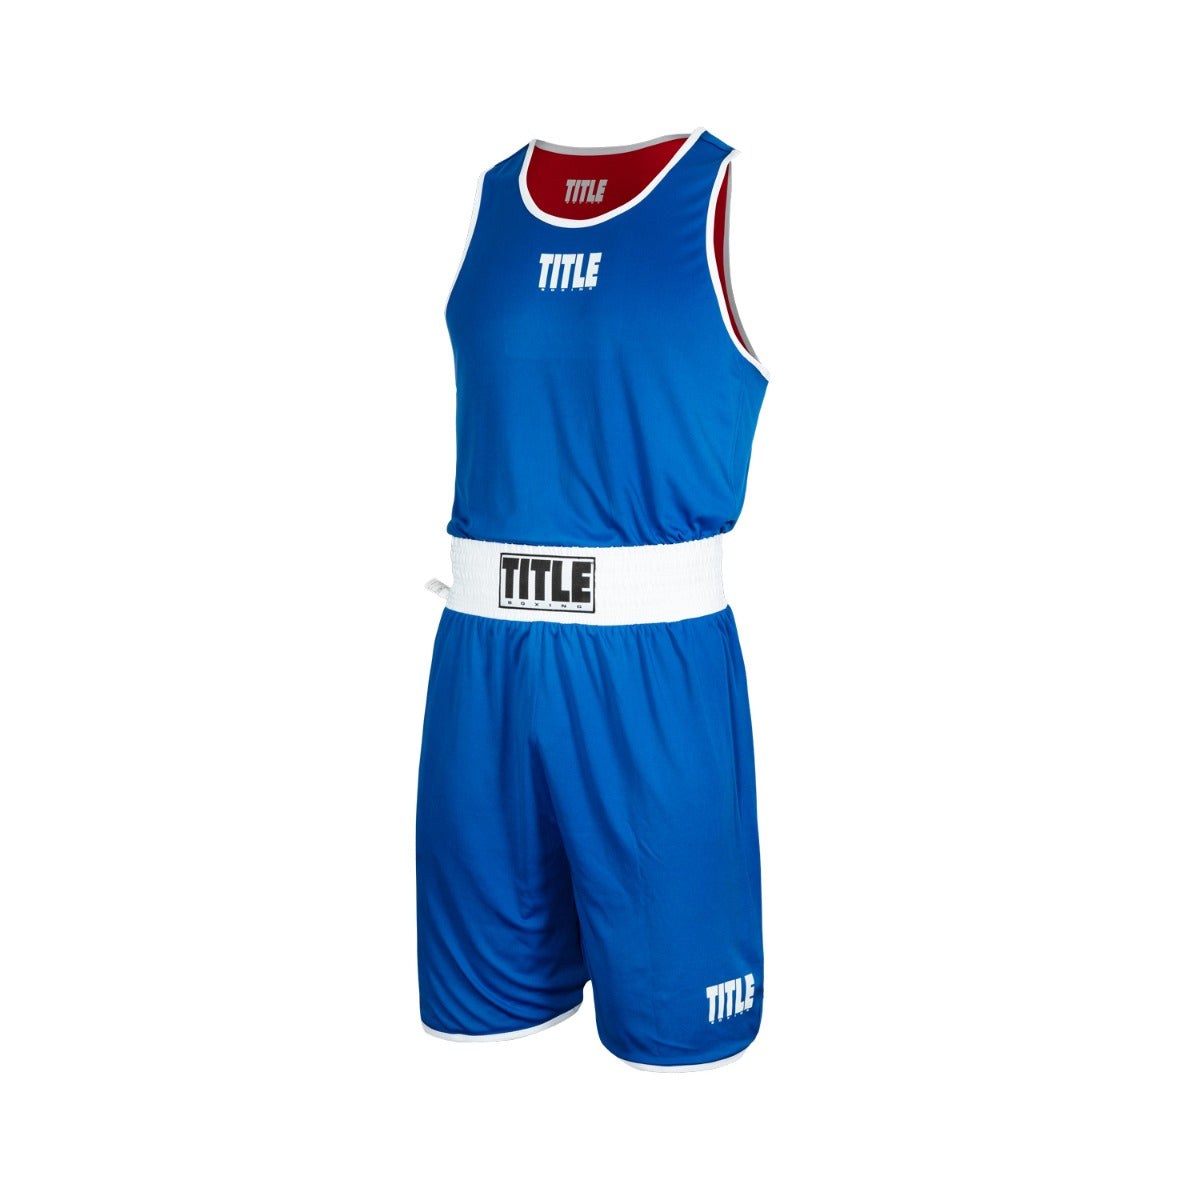 TITLE Reversible Aerovent Elite Amateur Boxing Set 1